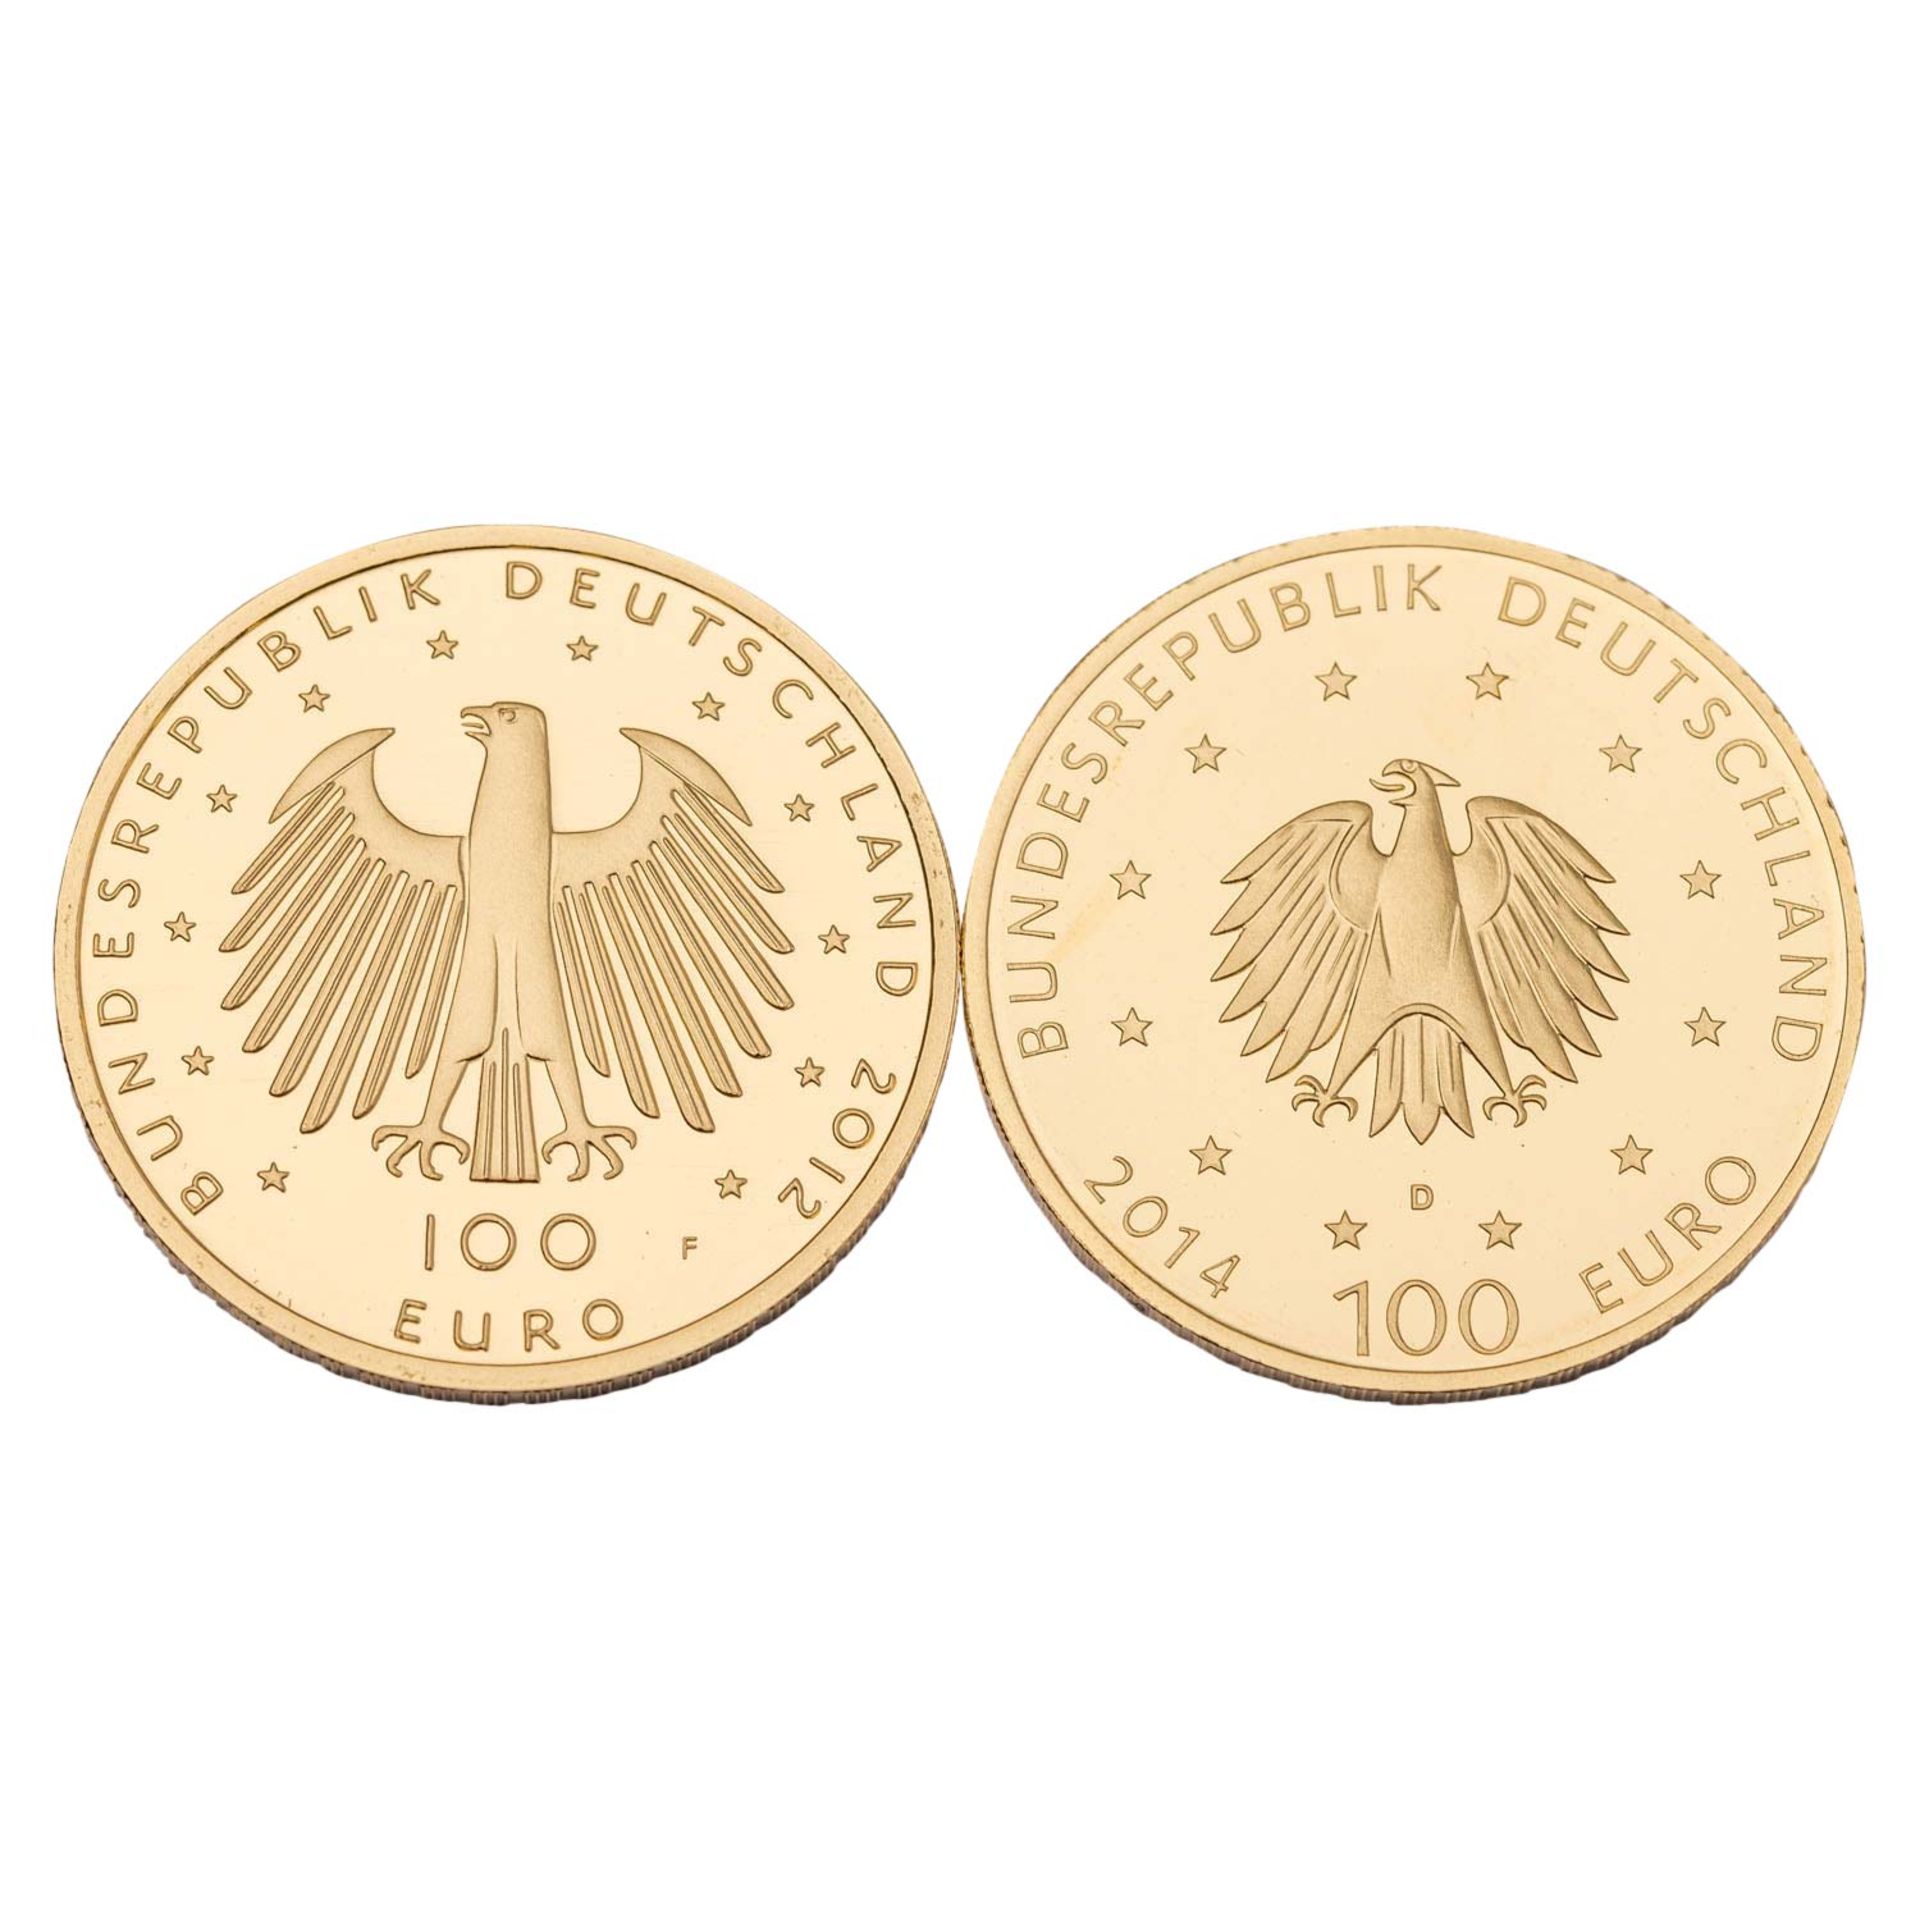 BRD - 2 x 100 Euro in GOLD, Aachen 2012, Kloster Lorsch 2014, - Image 2 of 2